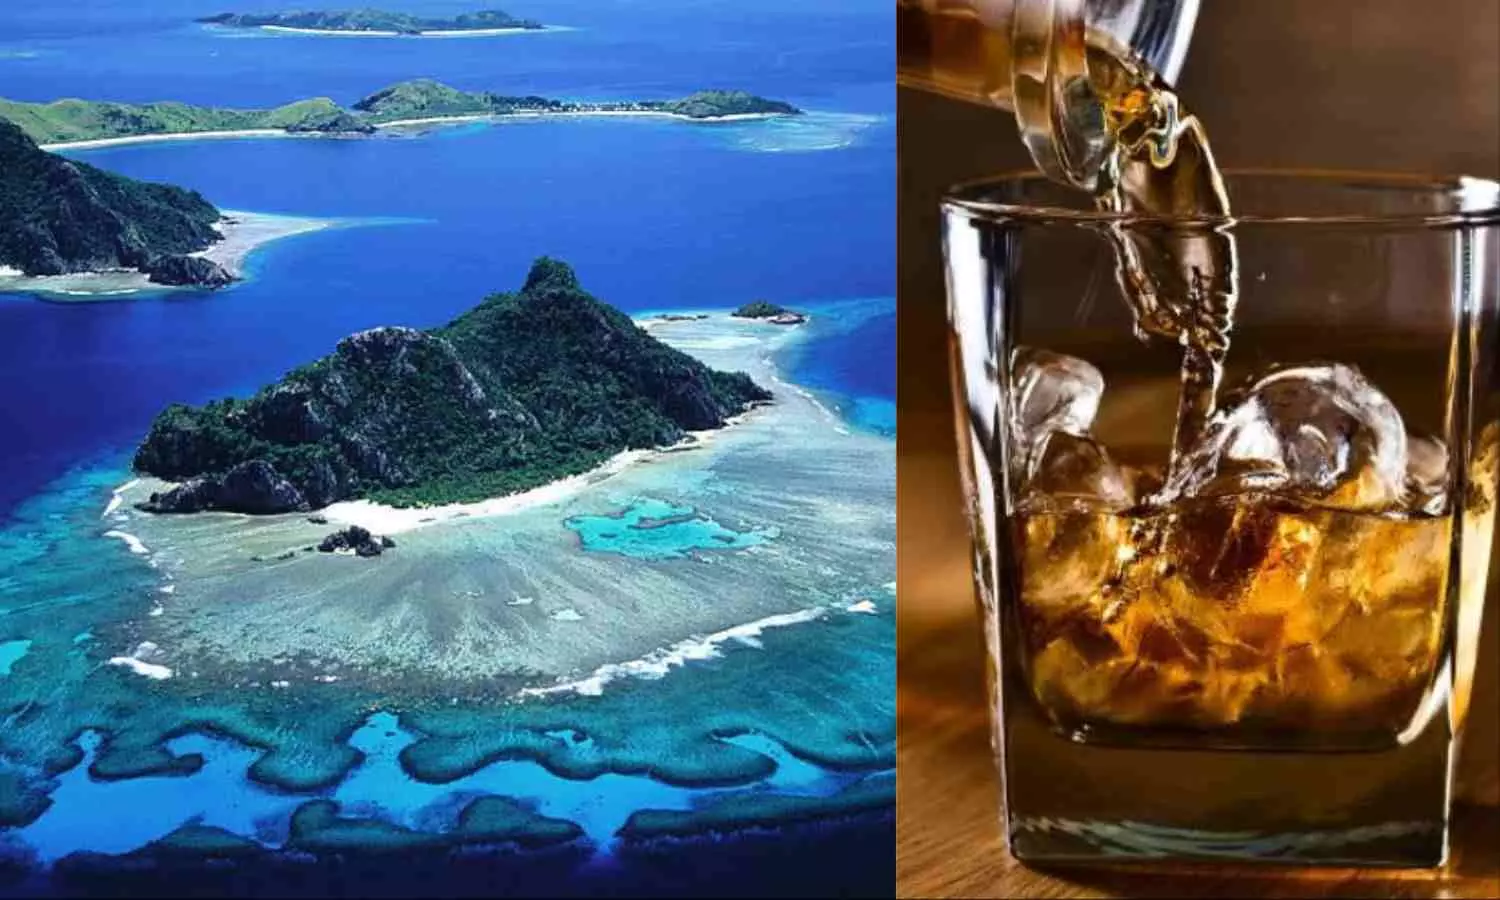 Lakshadweep Liquor Policy: क्या लक्षद्वीप में बैन है शराब? टूरिस्ट के लिए क्या है पॉलिसी? जानें यहां कहां मिलता है शराब